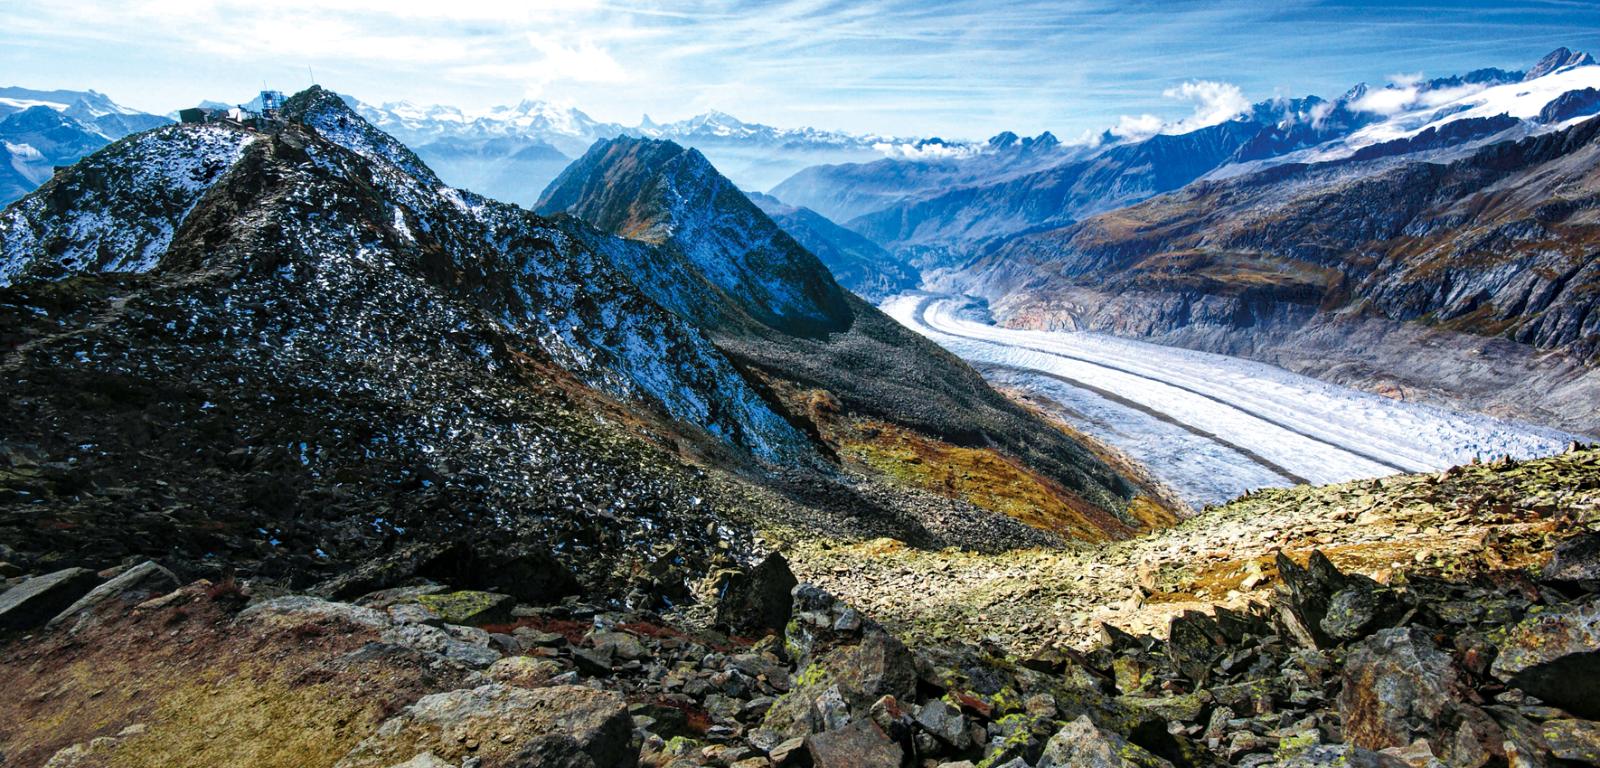 Aletsch - największy lodowiec Alp, który w ciągu 150 lat skrócił się o ponad 3 km.